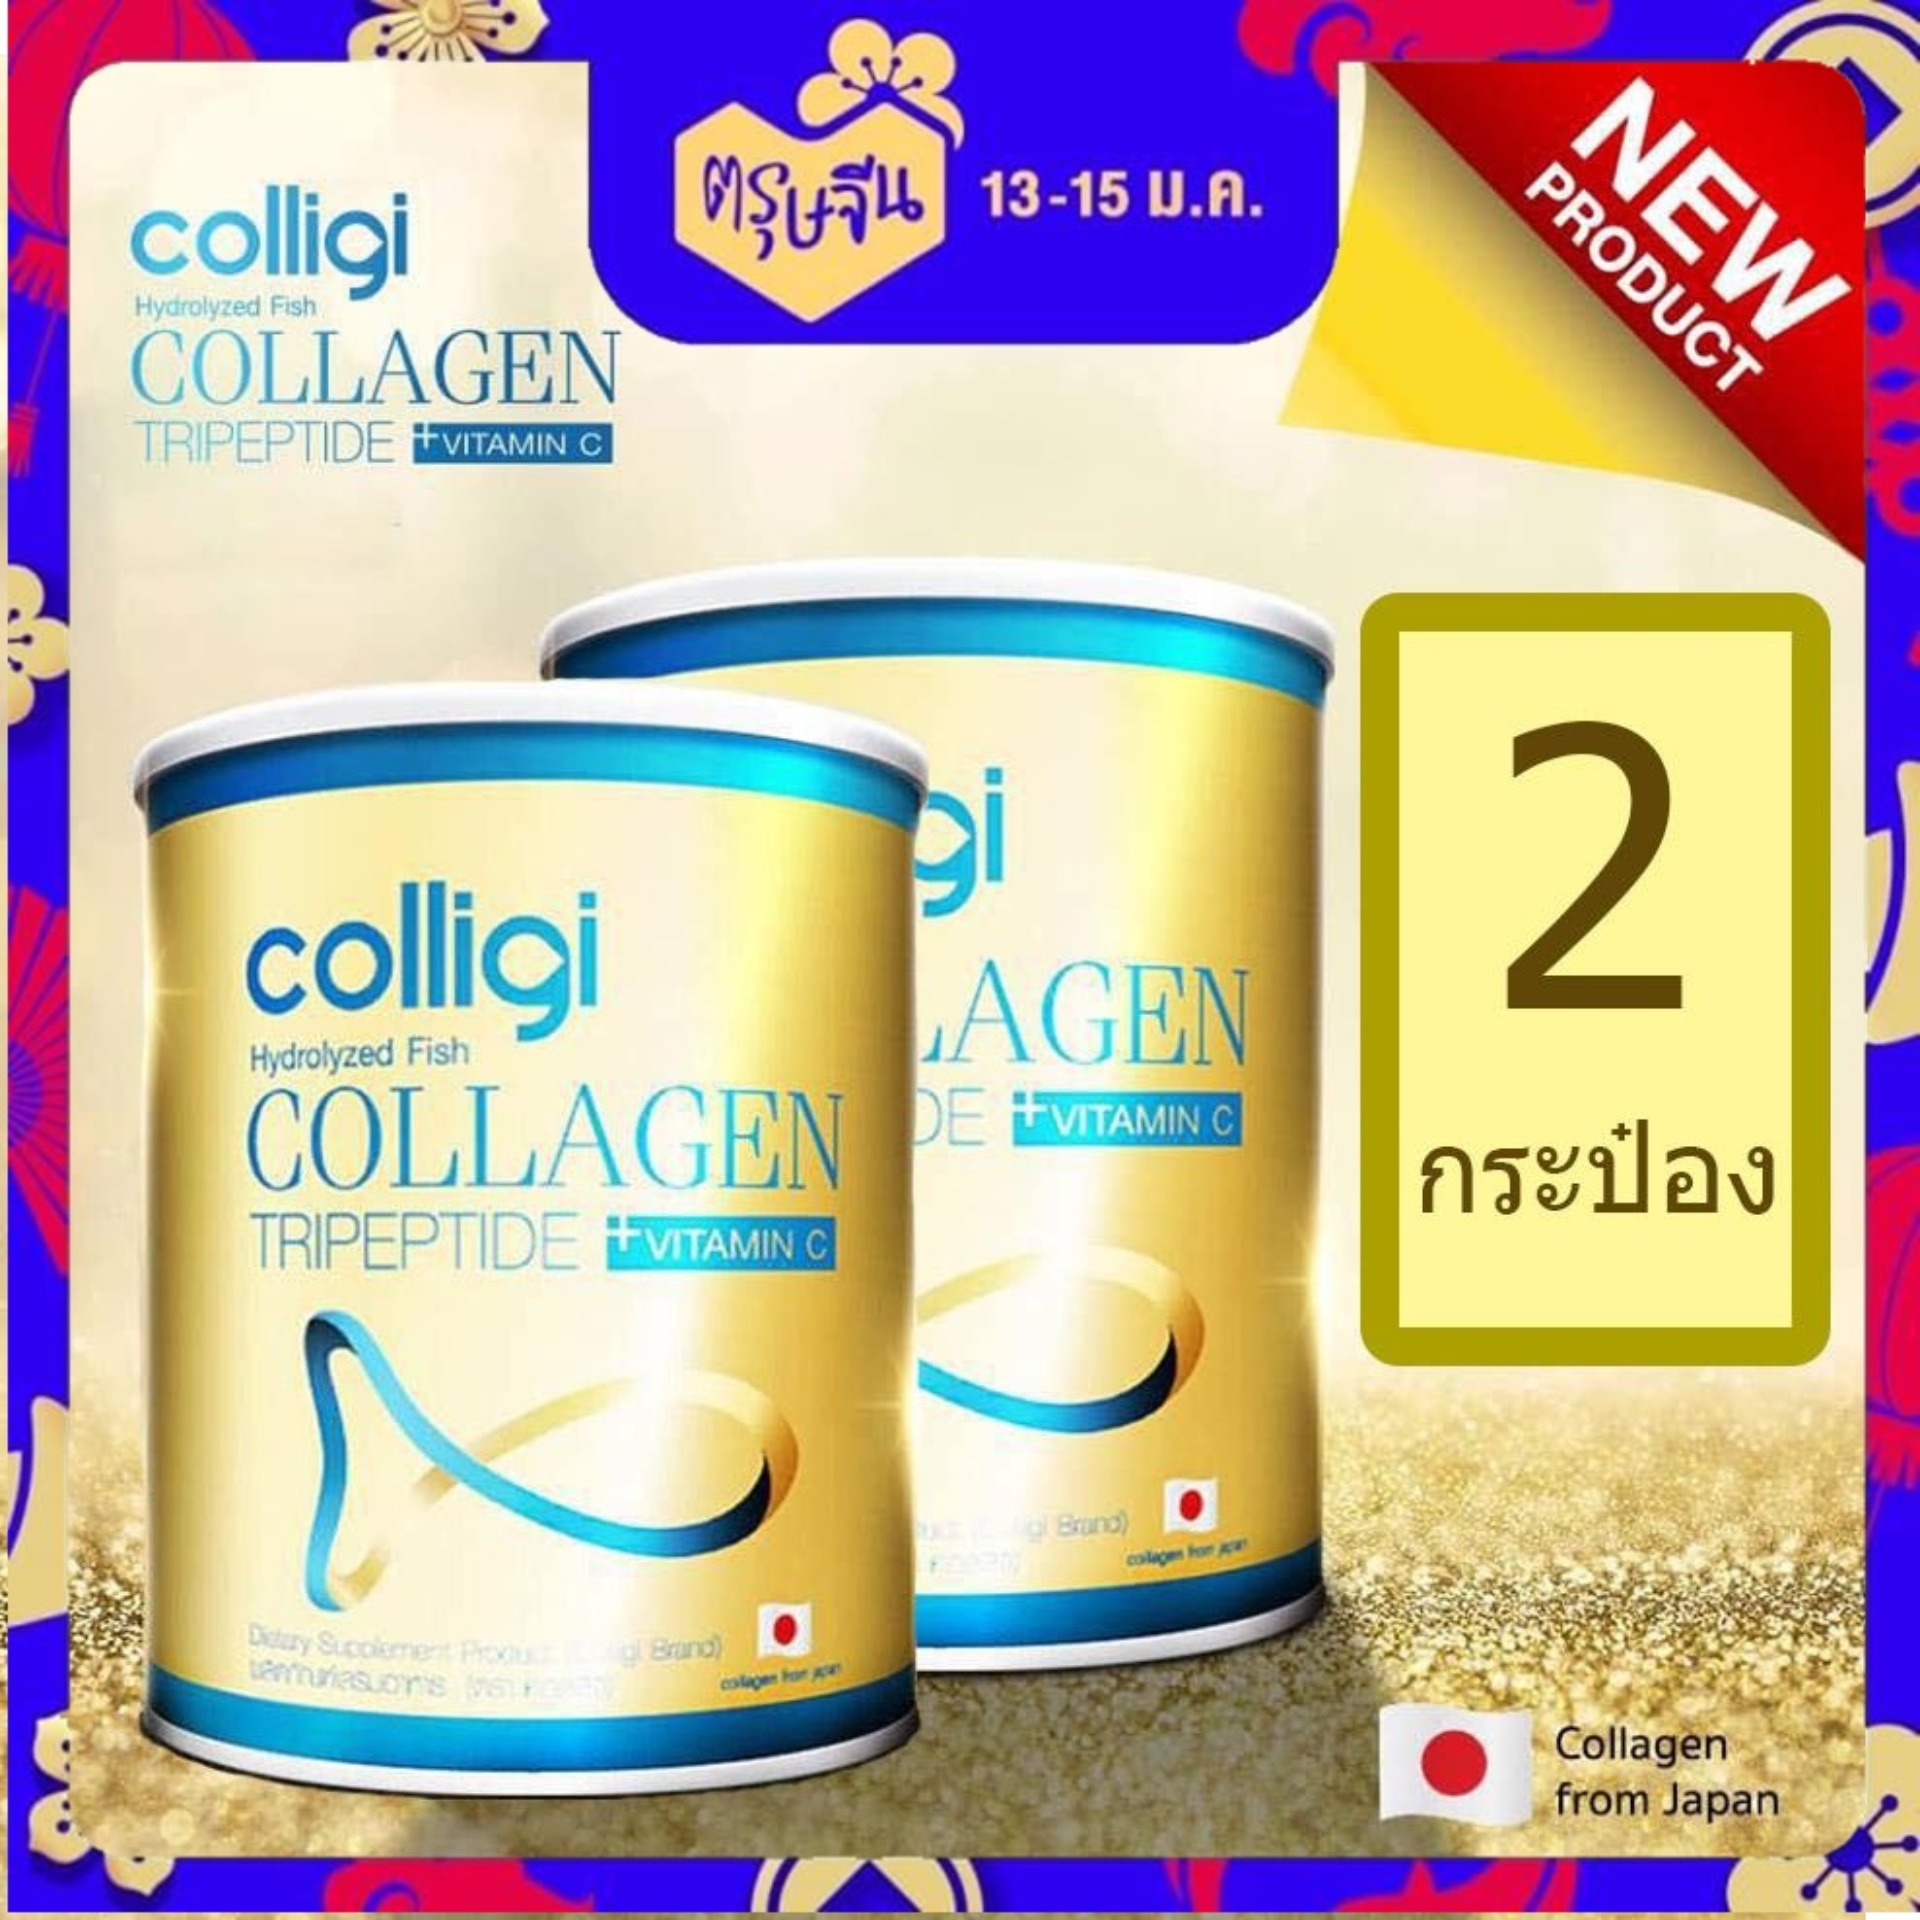 (ส่งฟรี ของแท้ 100%) Amado Colligi collagen tripeptide +Vitamin c อมาโด้ คอลลิจิ คอลลาเจน ไตรเปปไทด์ +วิตตามินซี โฉมใหม่ ขาวไวกว่าเดิม ไม่ใส่สี ไม่มีน้ำตาล ทานแล้วไม่อ้วน (2 กระป๋อง x ขนาด 110.66 กรัม)